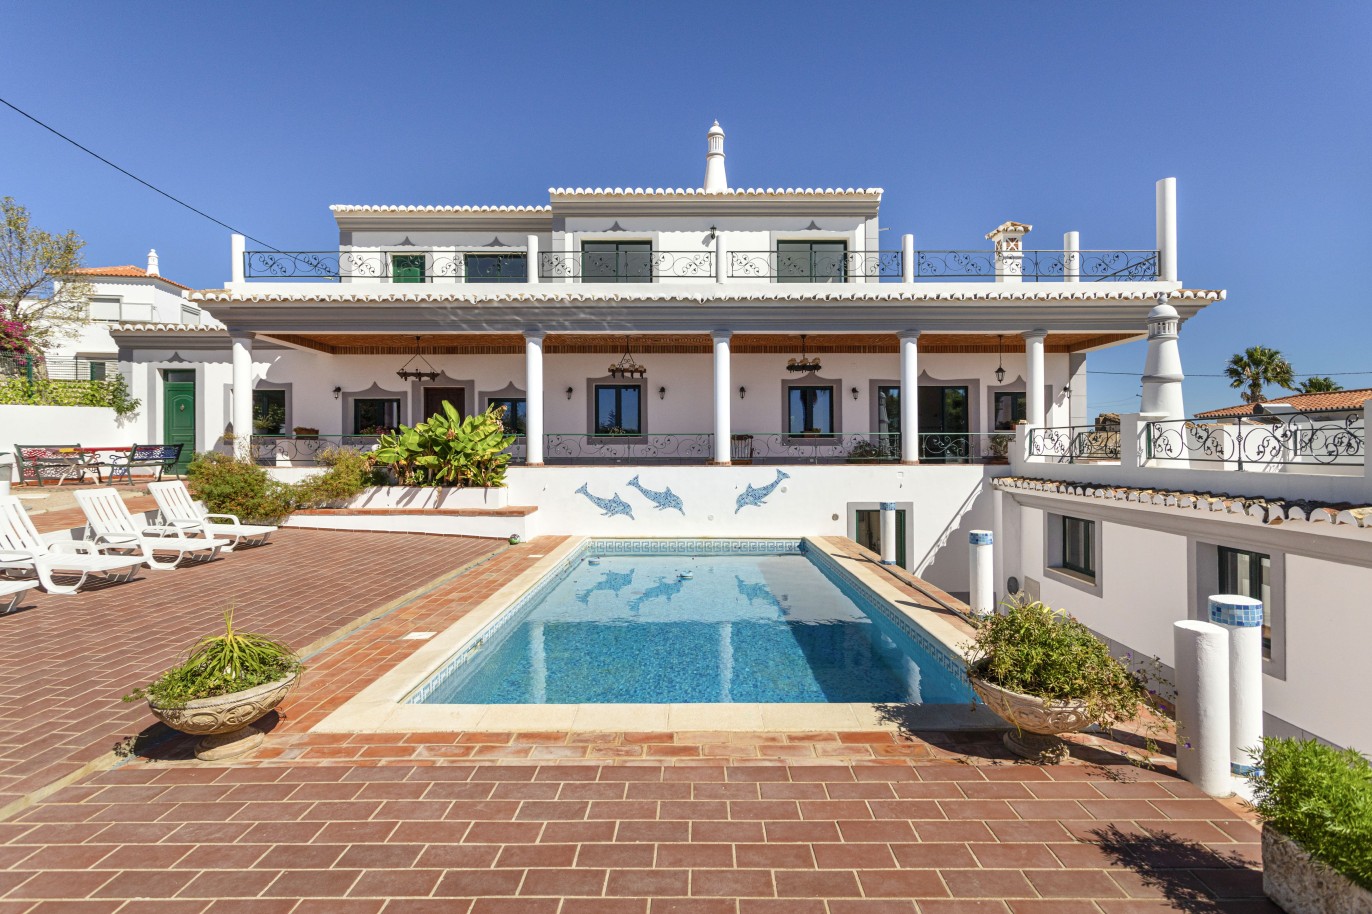 Piso en venta, piscina, vista mar y montaña, Loulé, Algarve, Portugal_236413